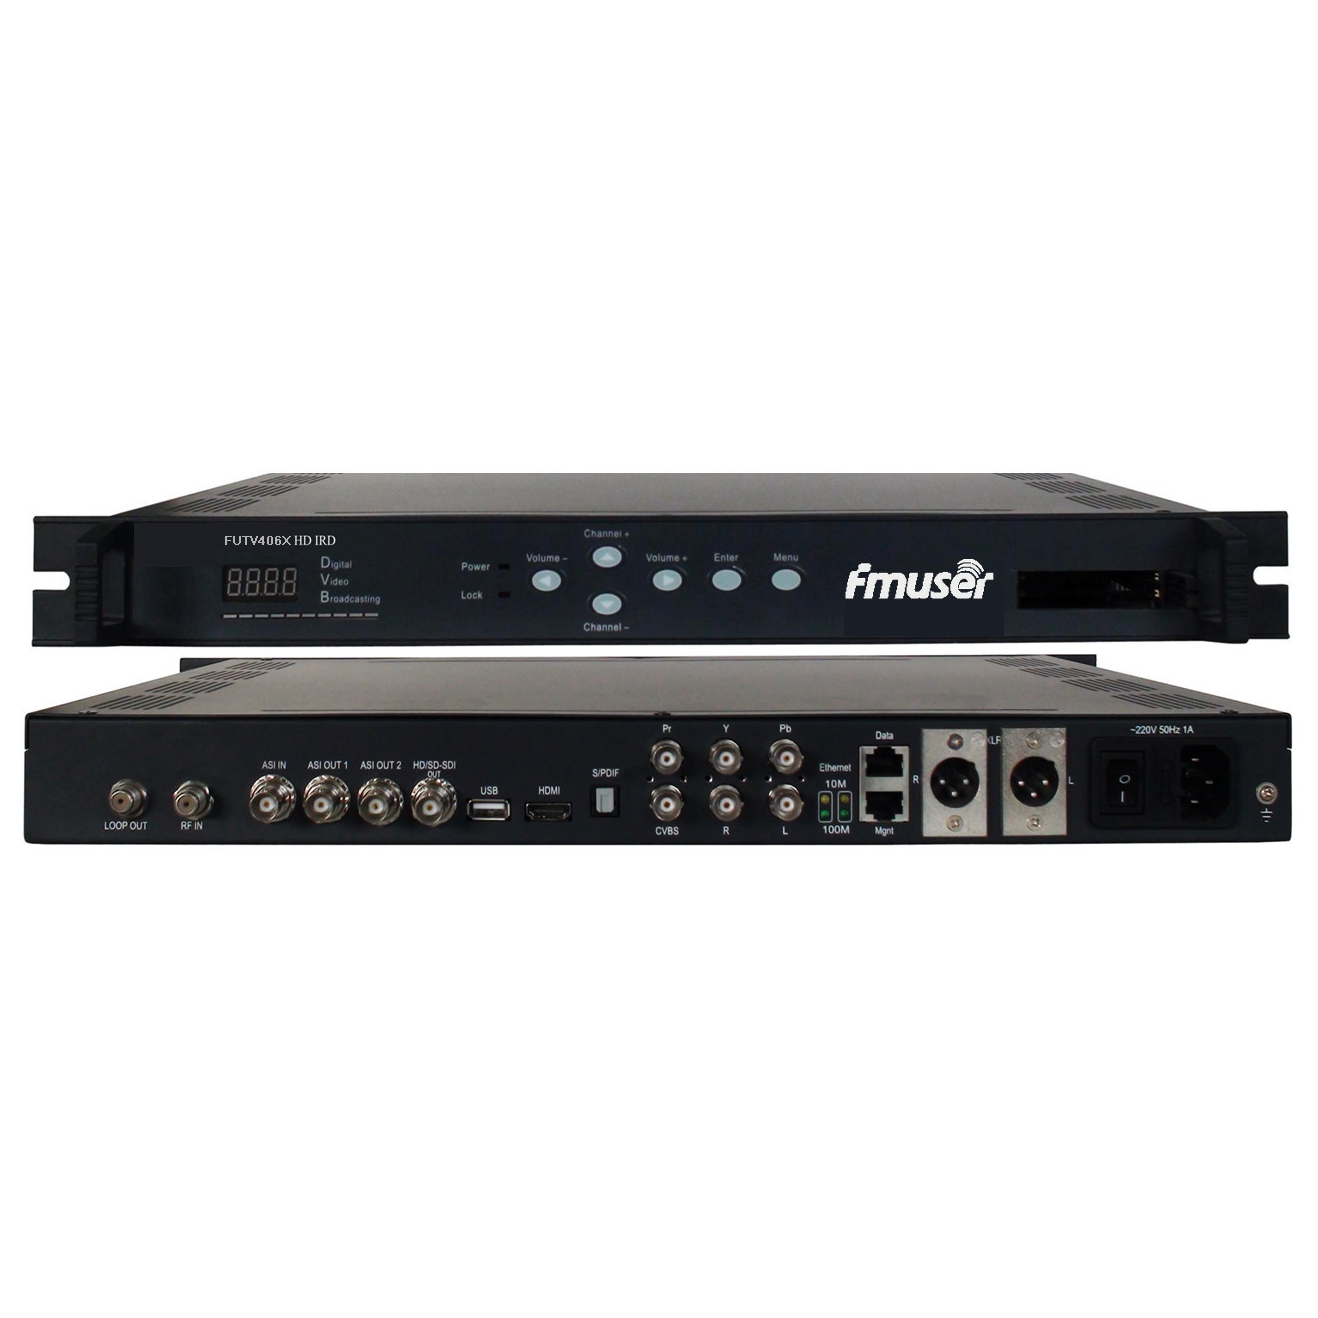 FMUSER FUTV406X HD IRD (1 DVB-S / S2 / T / C, ISDB-T ՌԴ Input, 1 ASI IP In, 2 ASI 1 IP Արդյունք, HDMI SDI CVBS XLR Out) հետ Mux & biss